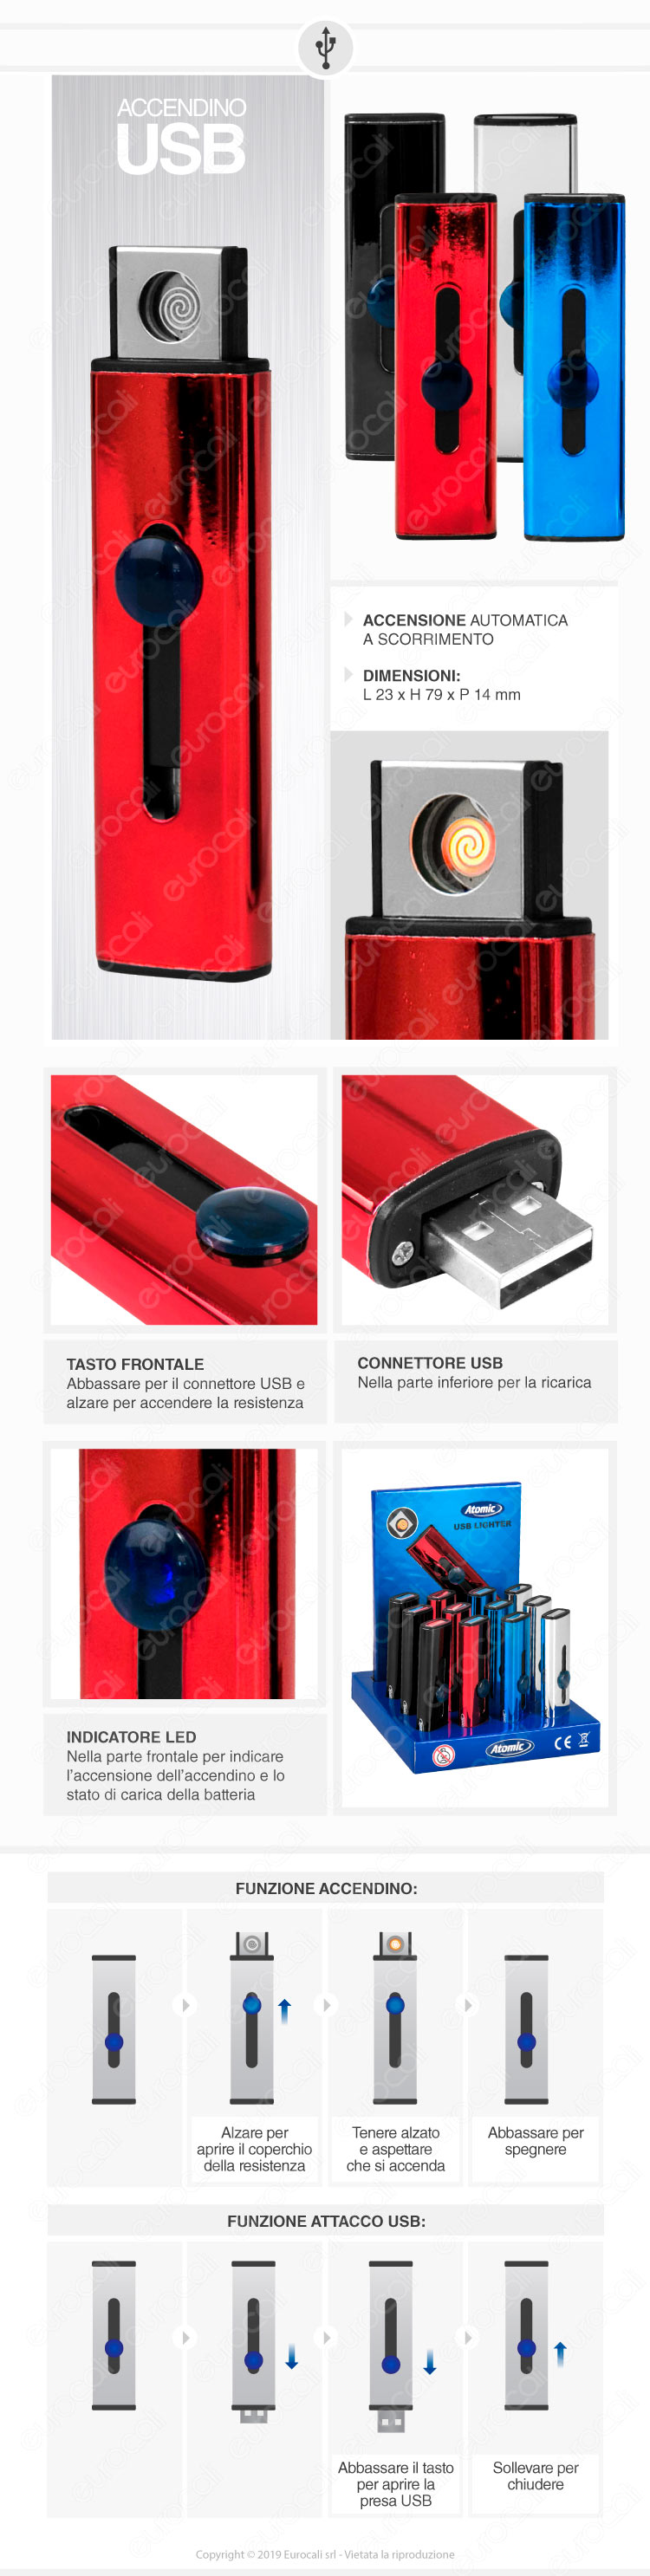 Atomic Accendino USB Ricaricabile Antivento in Metallo Lucido - Box di 13 Accendini